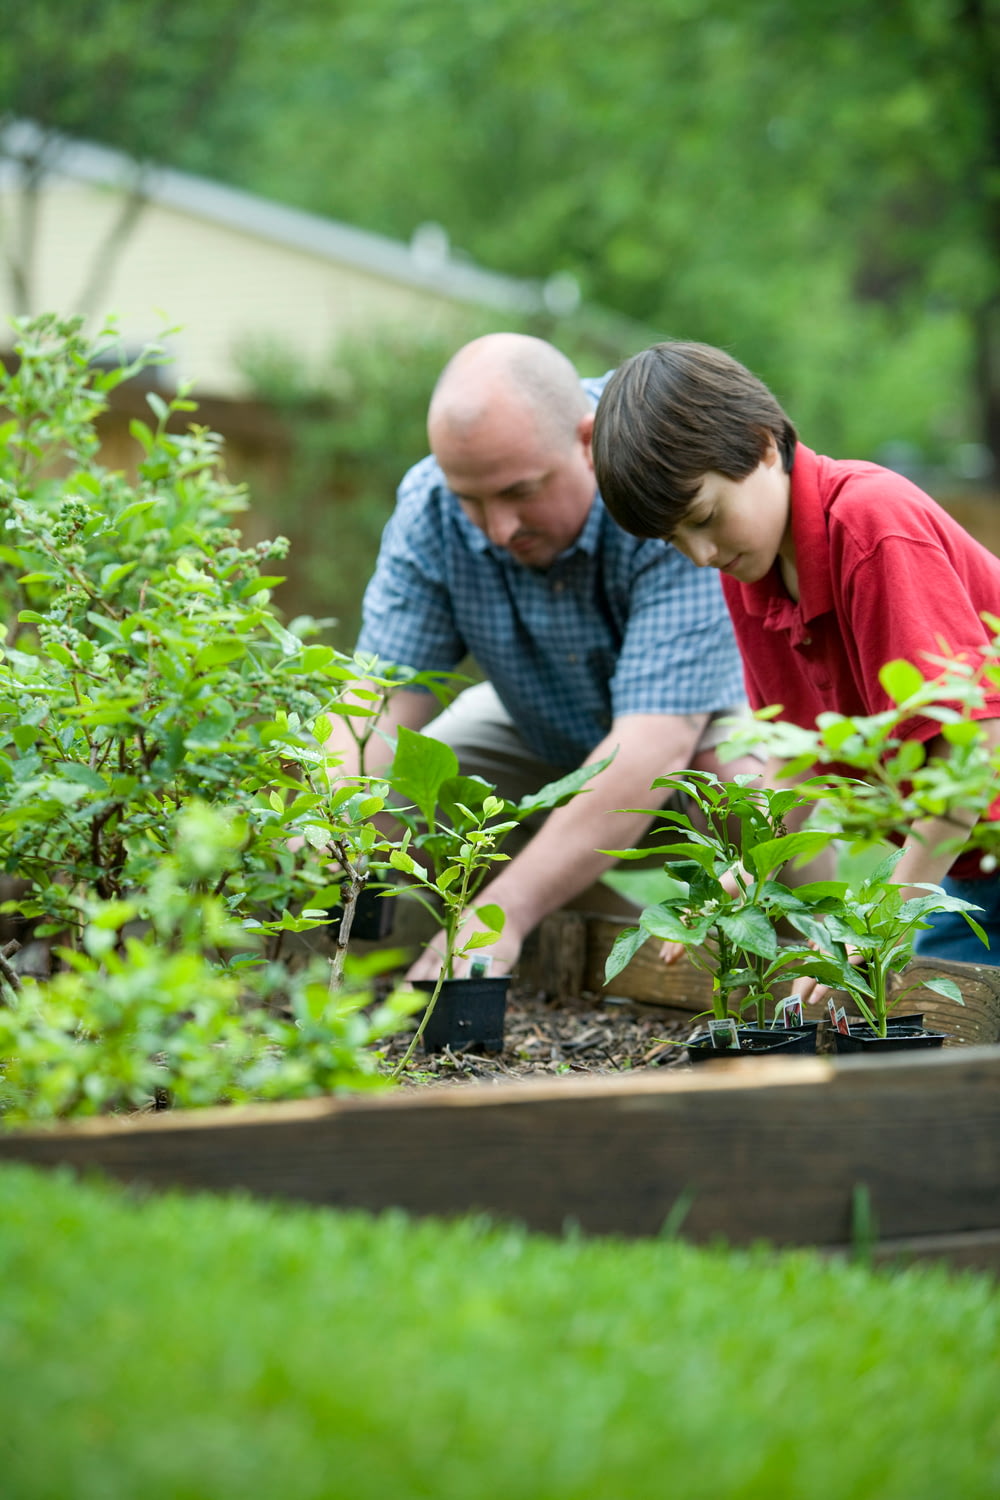 파란색과 흰색 체크 무늬 버튼 업 셔츠를 입은 소년이 녹색 식물을 들고 있습니다.